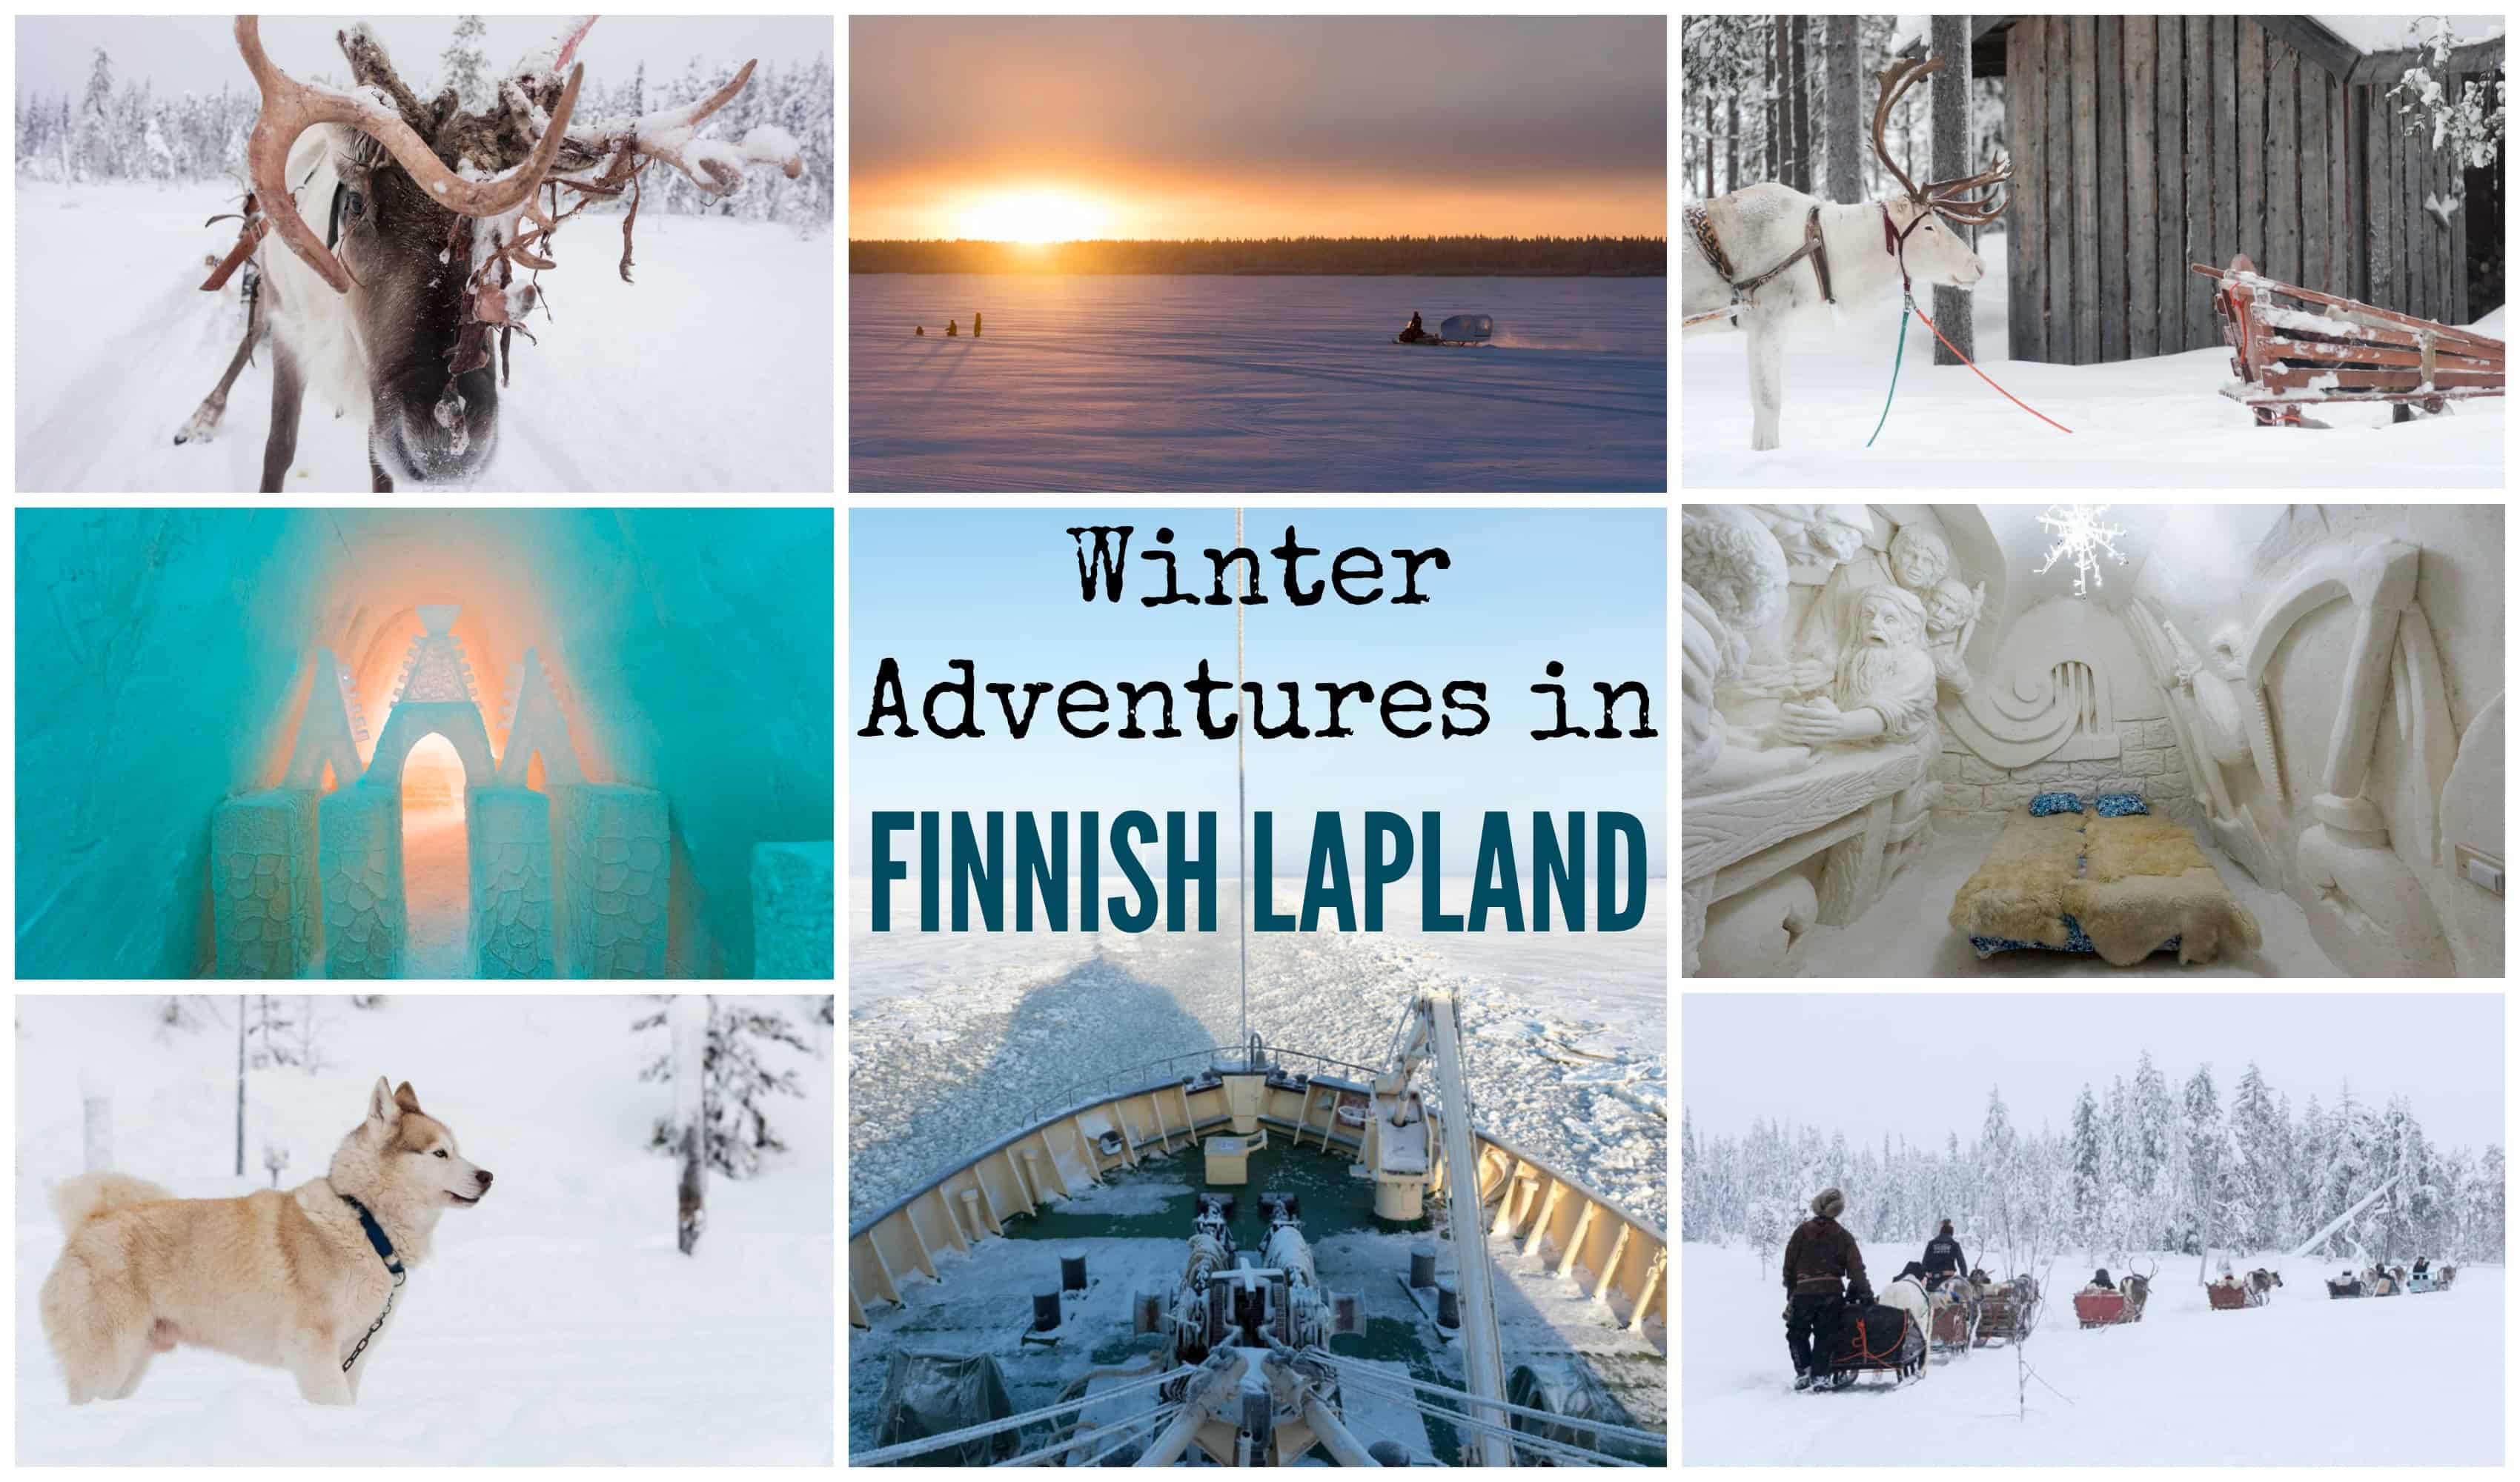 Winter Adventures in Finnish Lapland